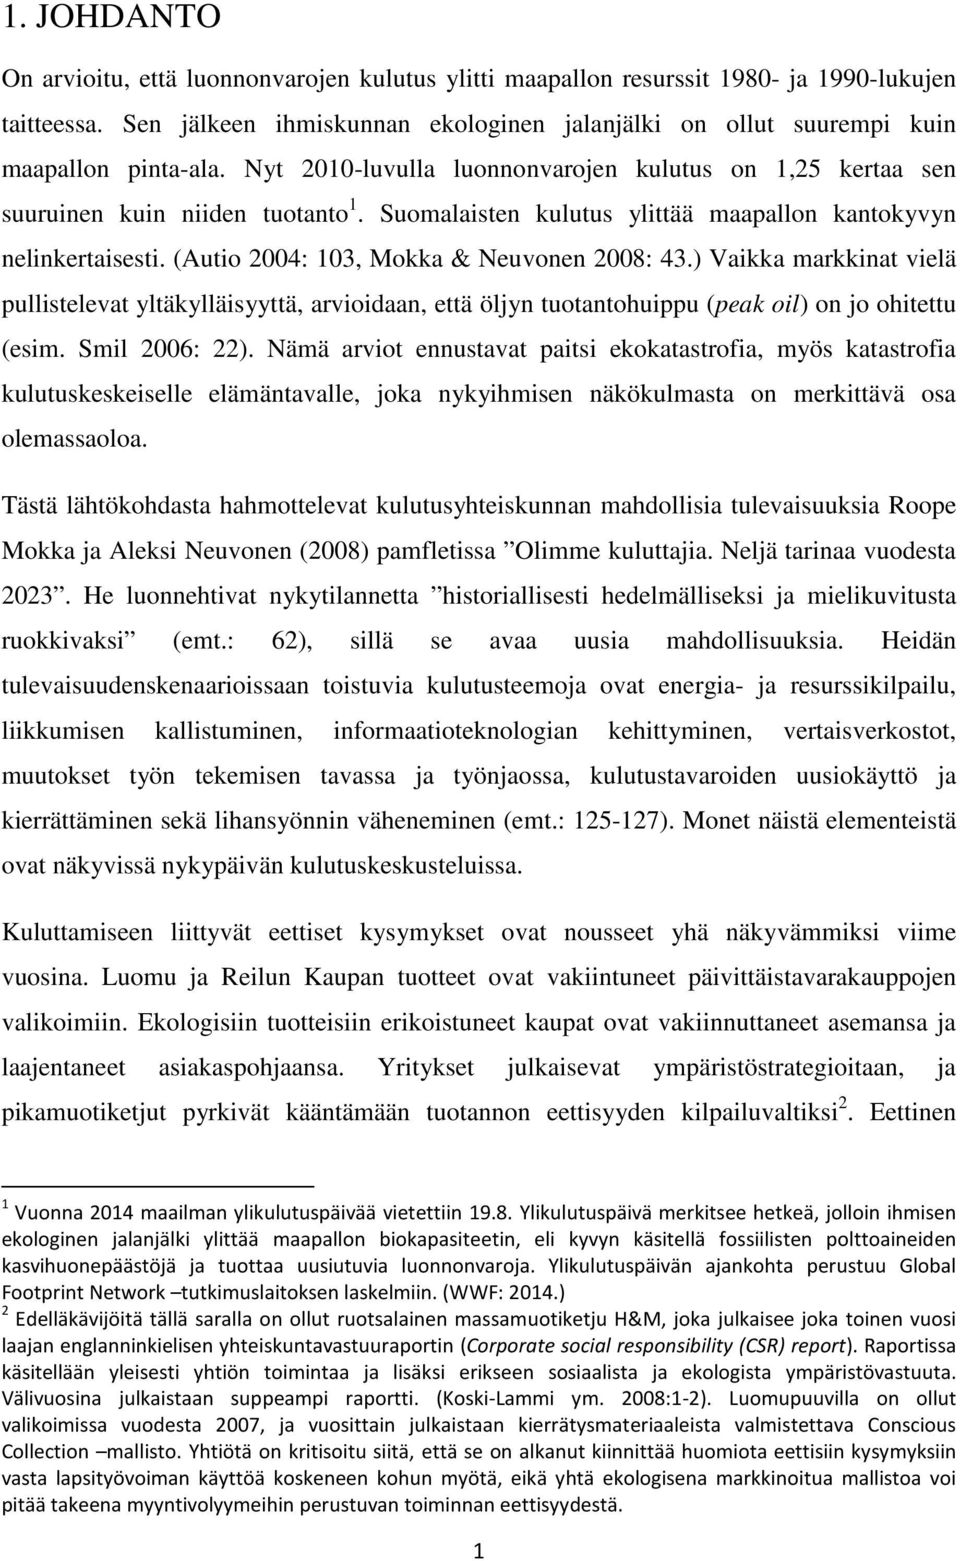 Suomalaisten kulutus ylittää maapallon kantokyvyn nelinkertaisesti. (Autio 2004: 103, Mokka & Neuvonen 2008: 43.